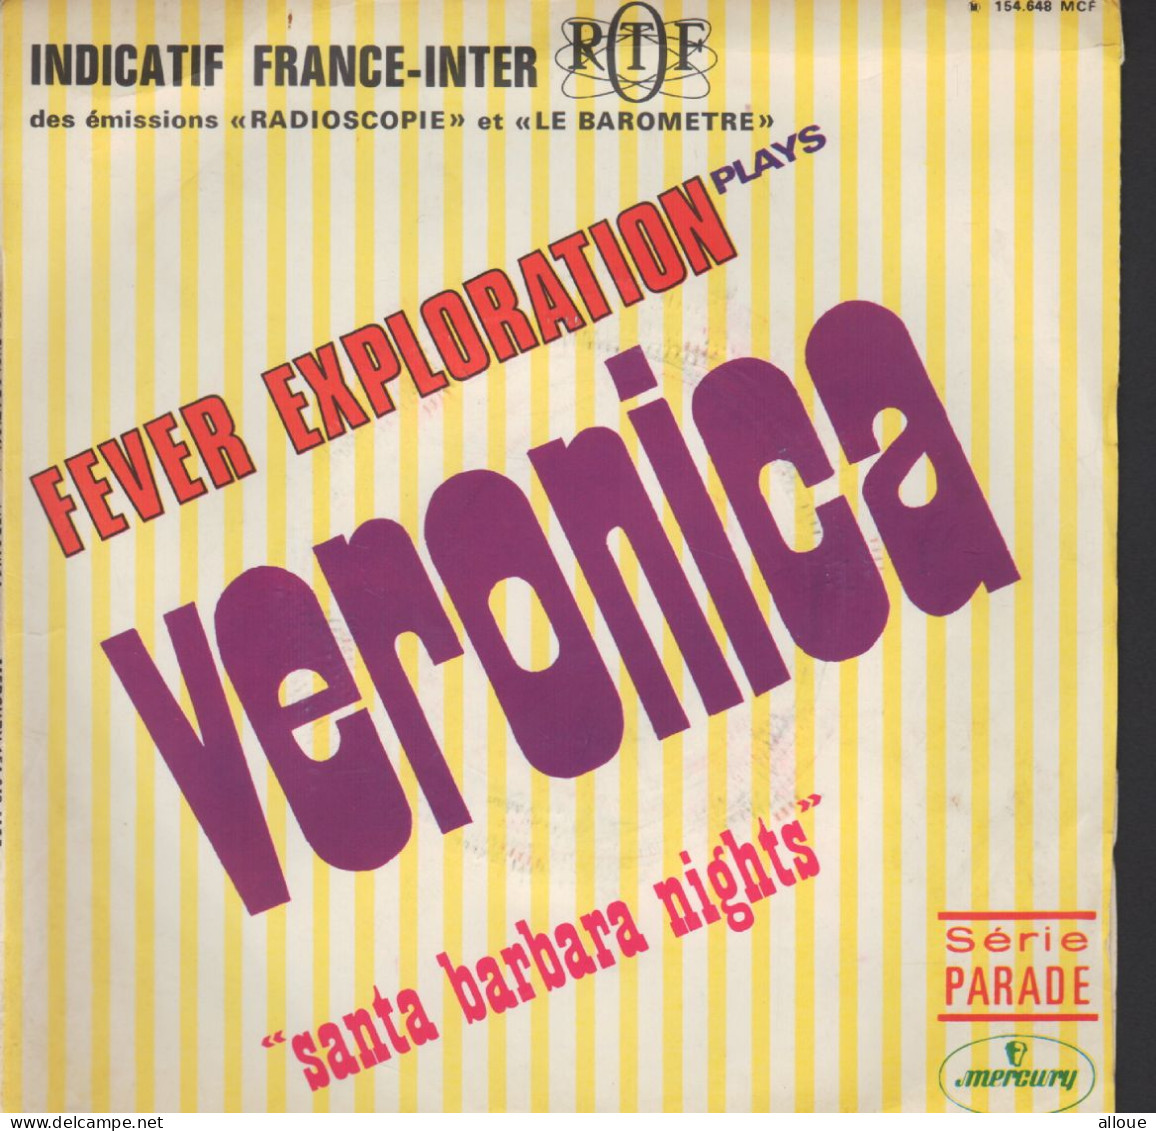 FEVER EXPLORATION - FR SG - INDICATIF FRANCE INTER - VERONICA - Soundtracks, Film Music